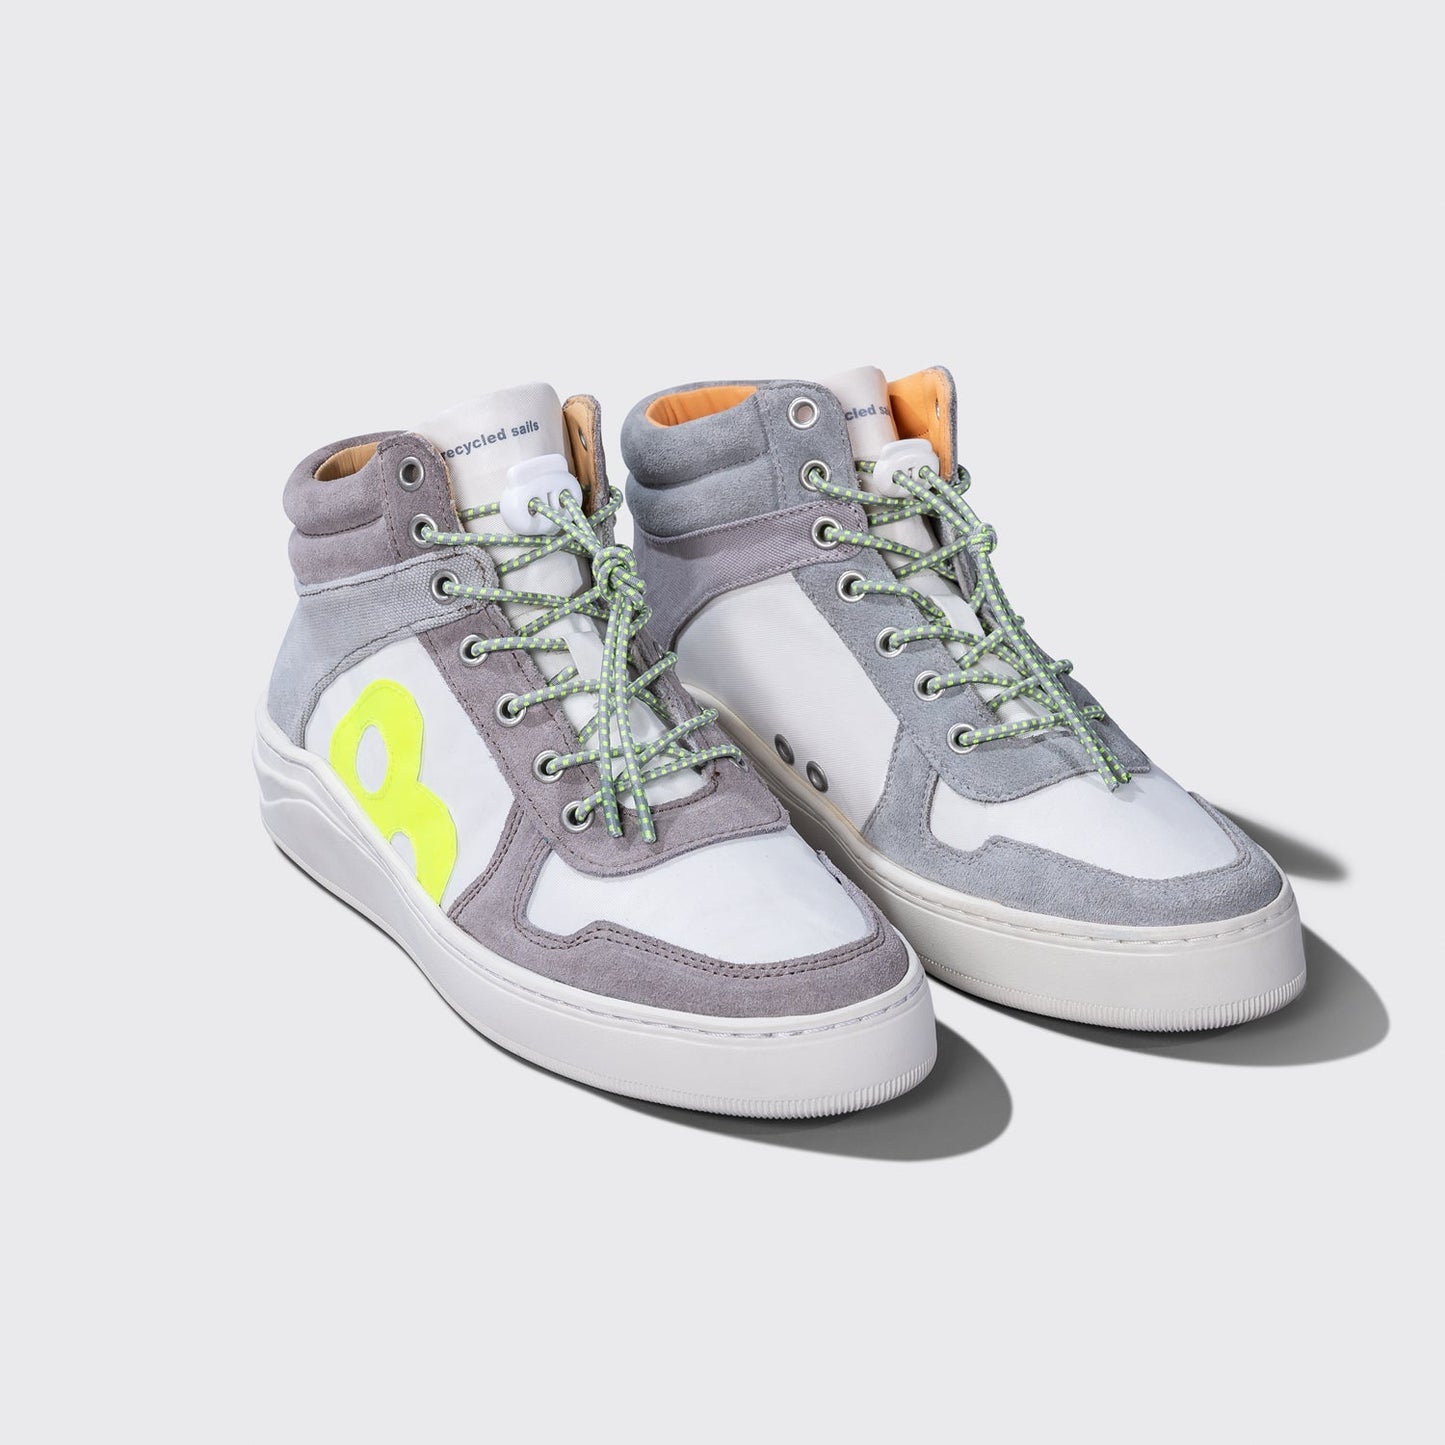 OAK ISLAND Damen Sneaker - safety grey